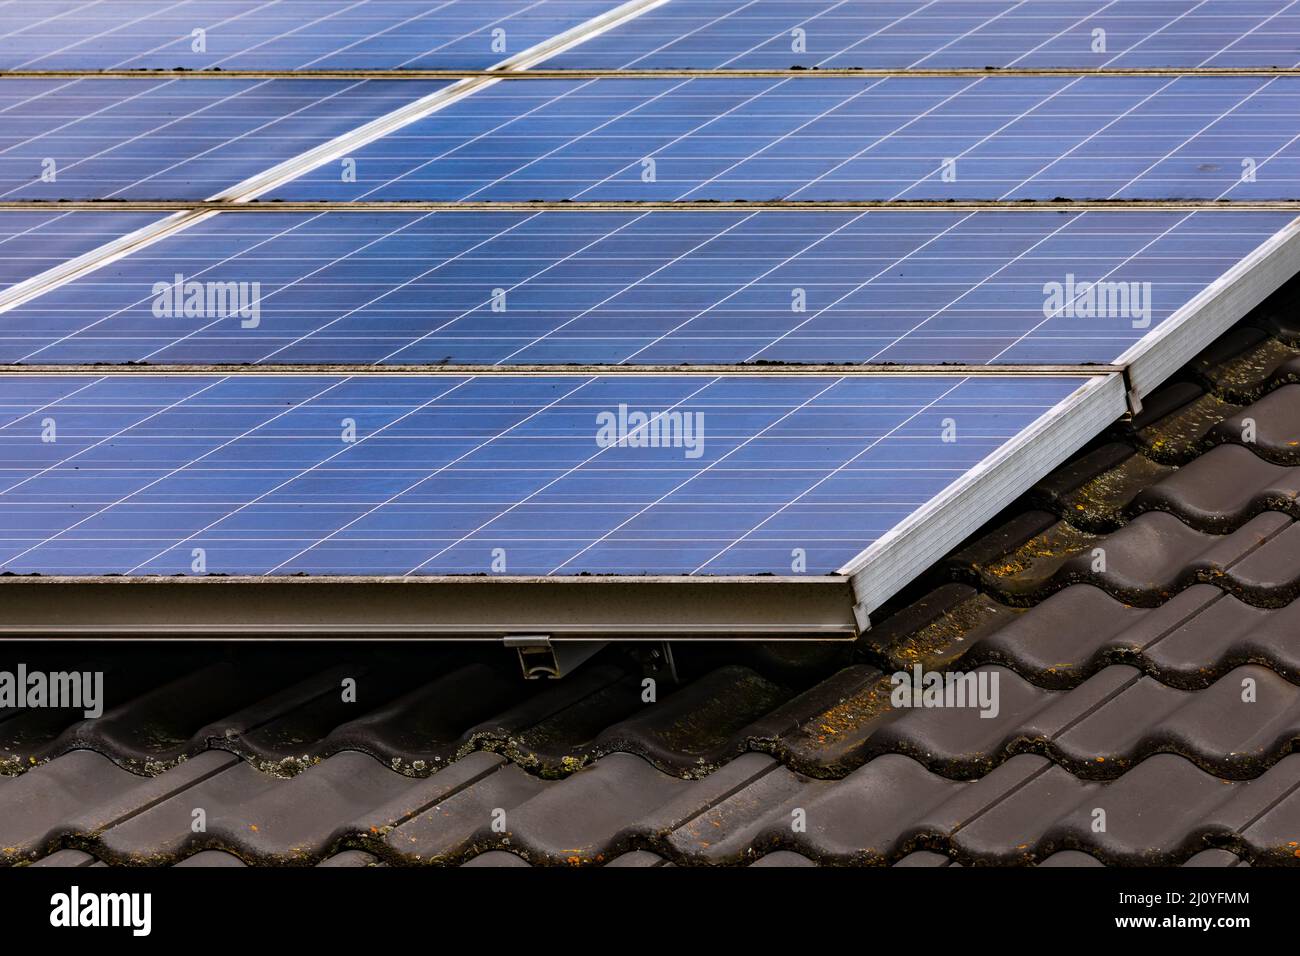 Solarzellen auf dem privaten Dach wandeln Sonnenlicht über Photovoltaikzellen direkt in elektrische Energie um Stockfoto